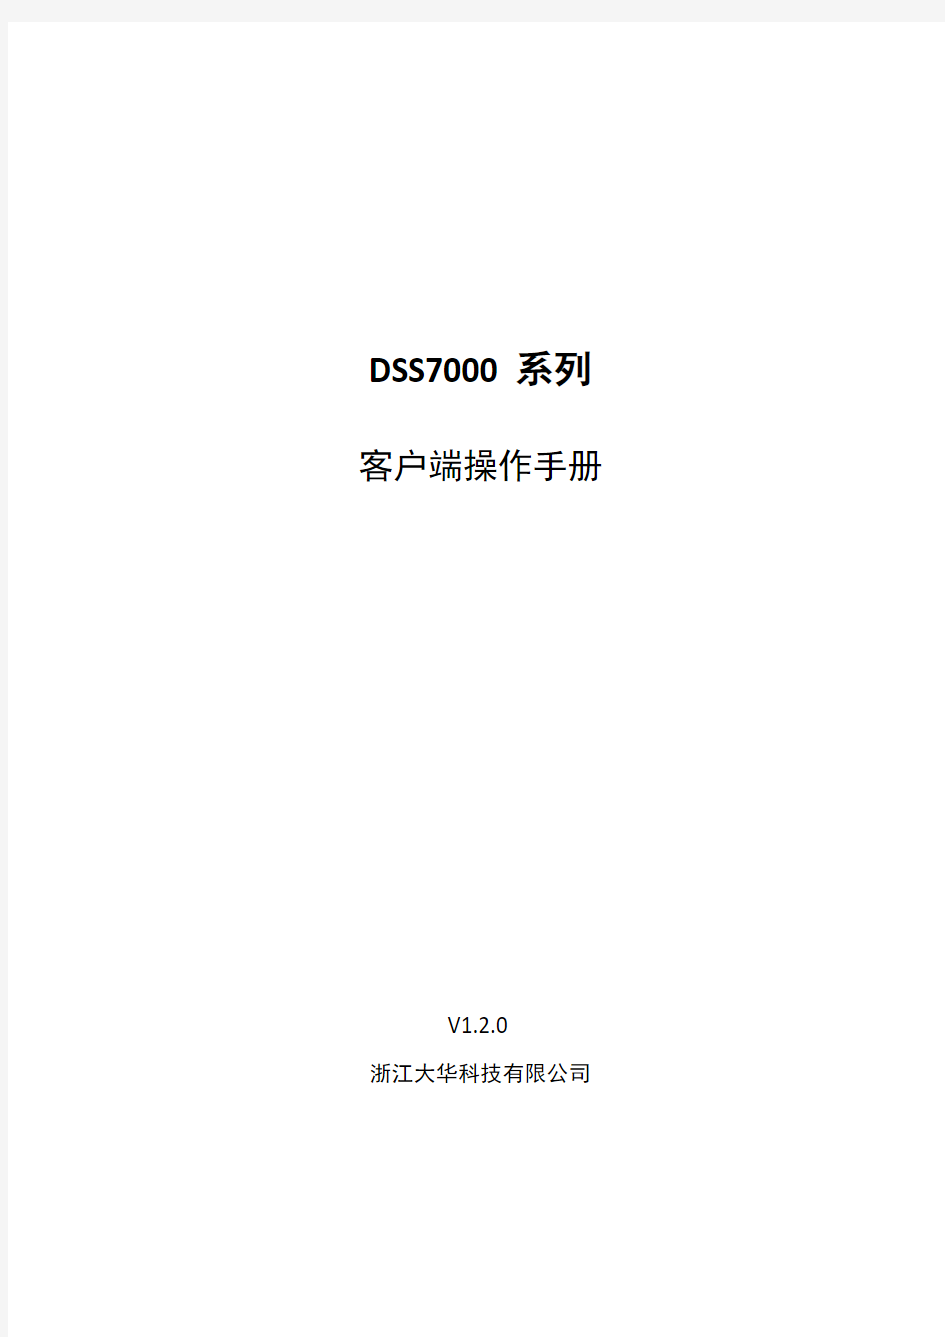 大华DSS7000系列_客户端操作手册_V1.2.0